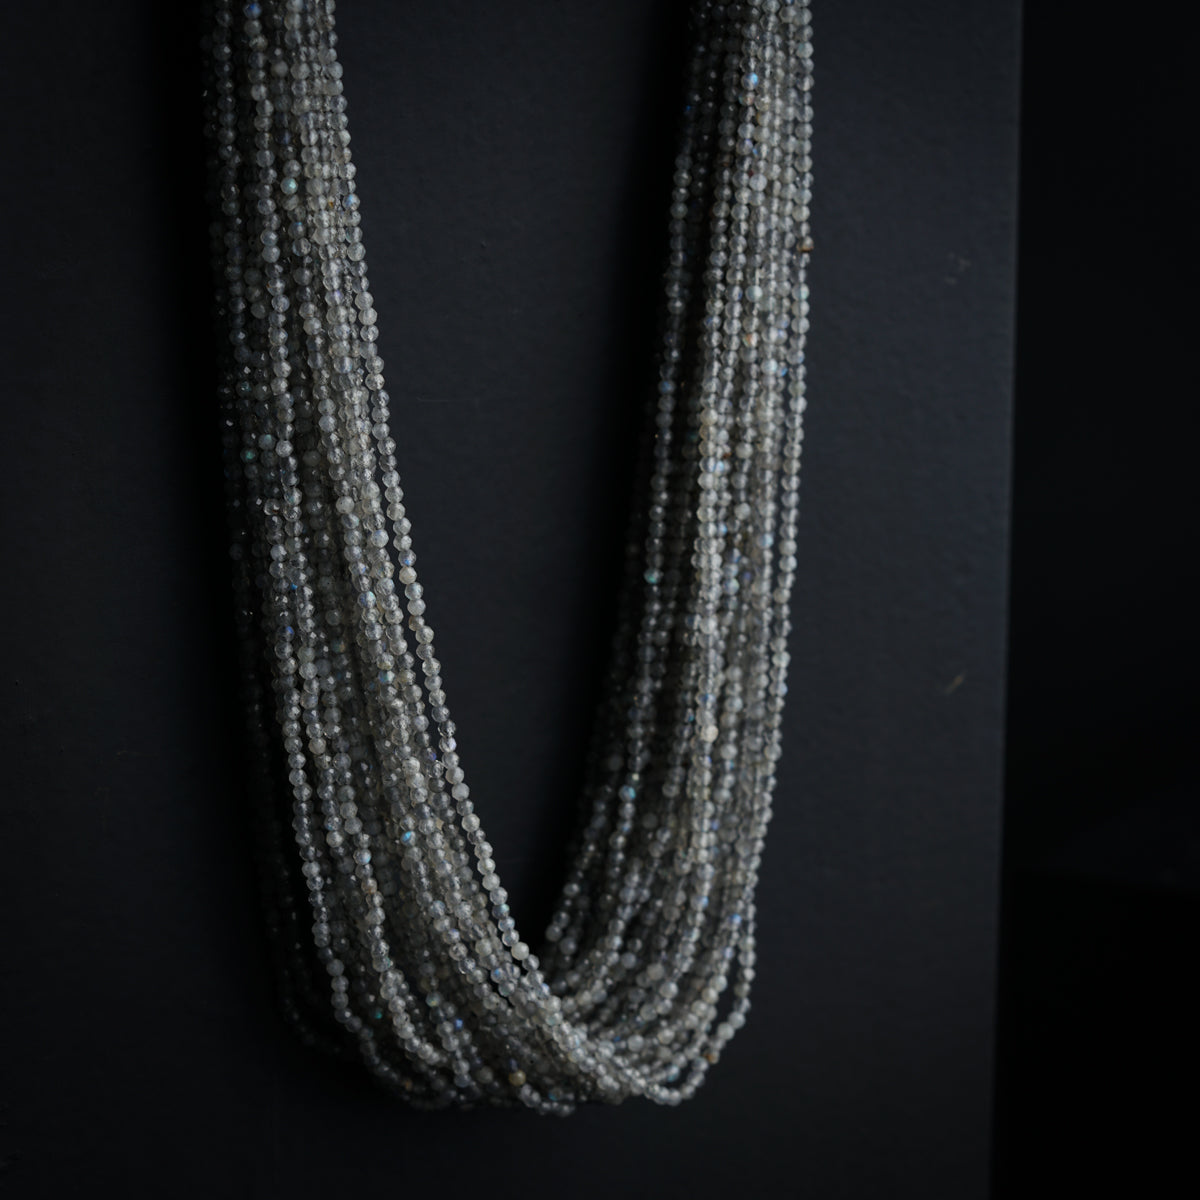 Multi-Layer Necklace - Iolite